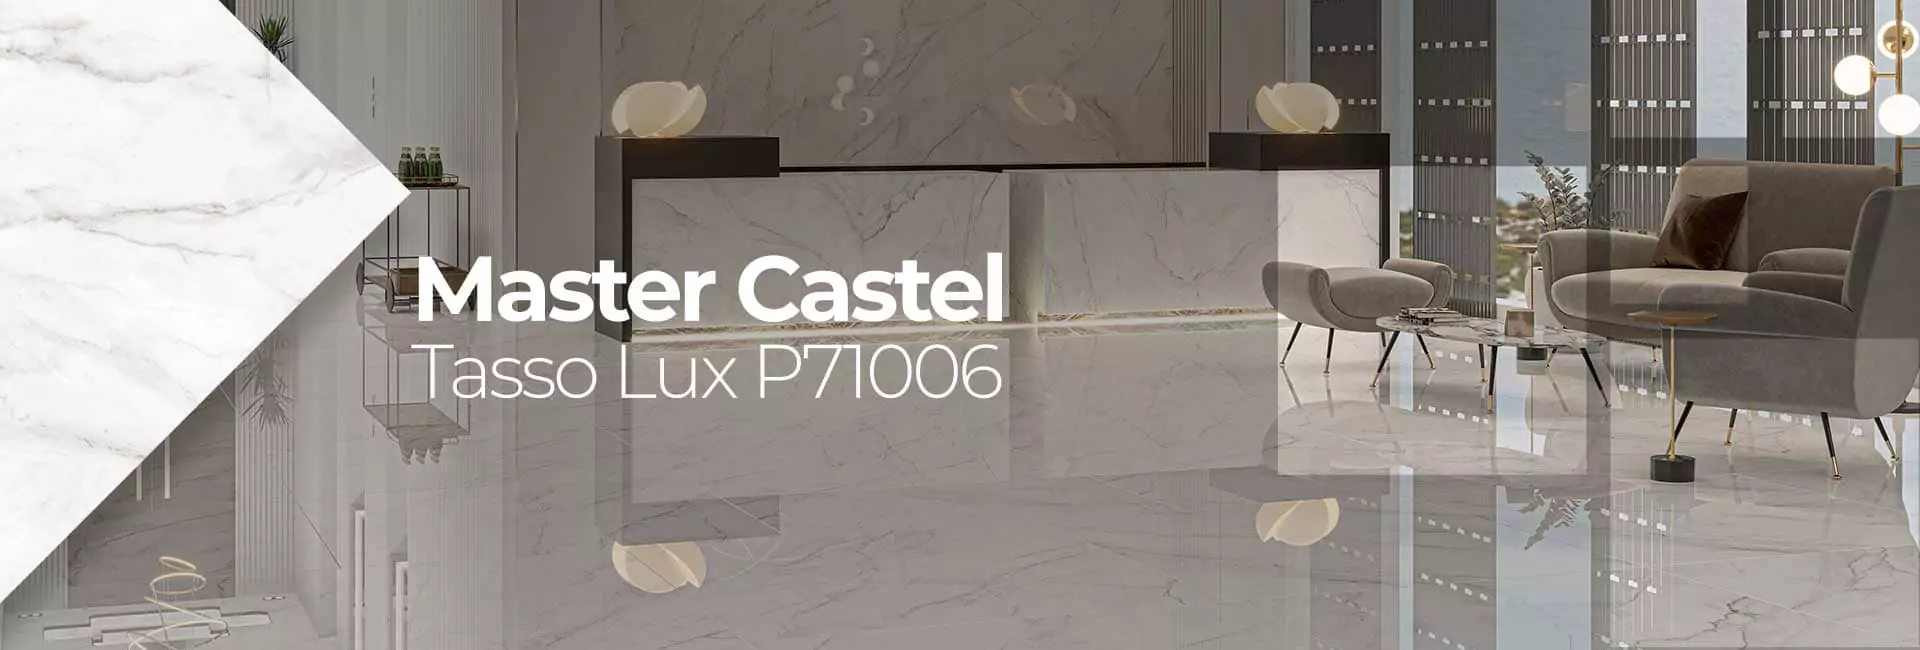 Master Castel Tasso Lux